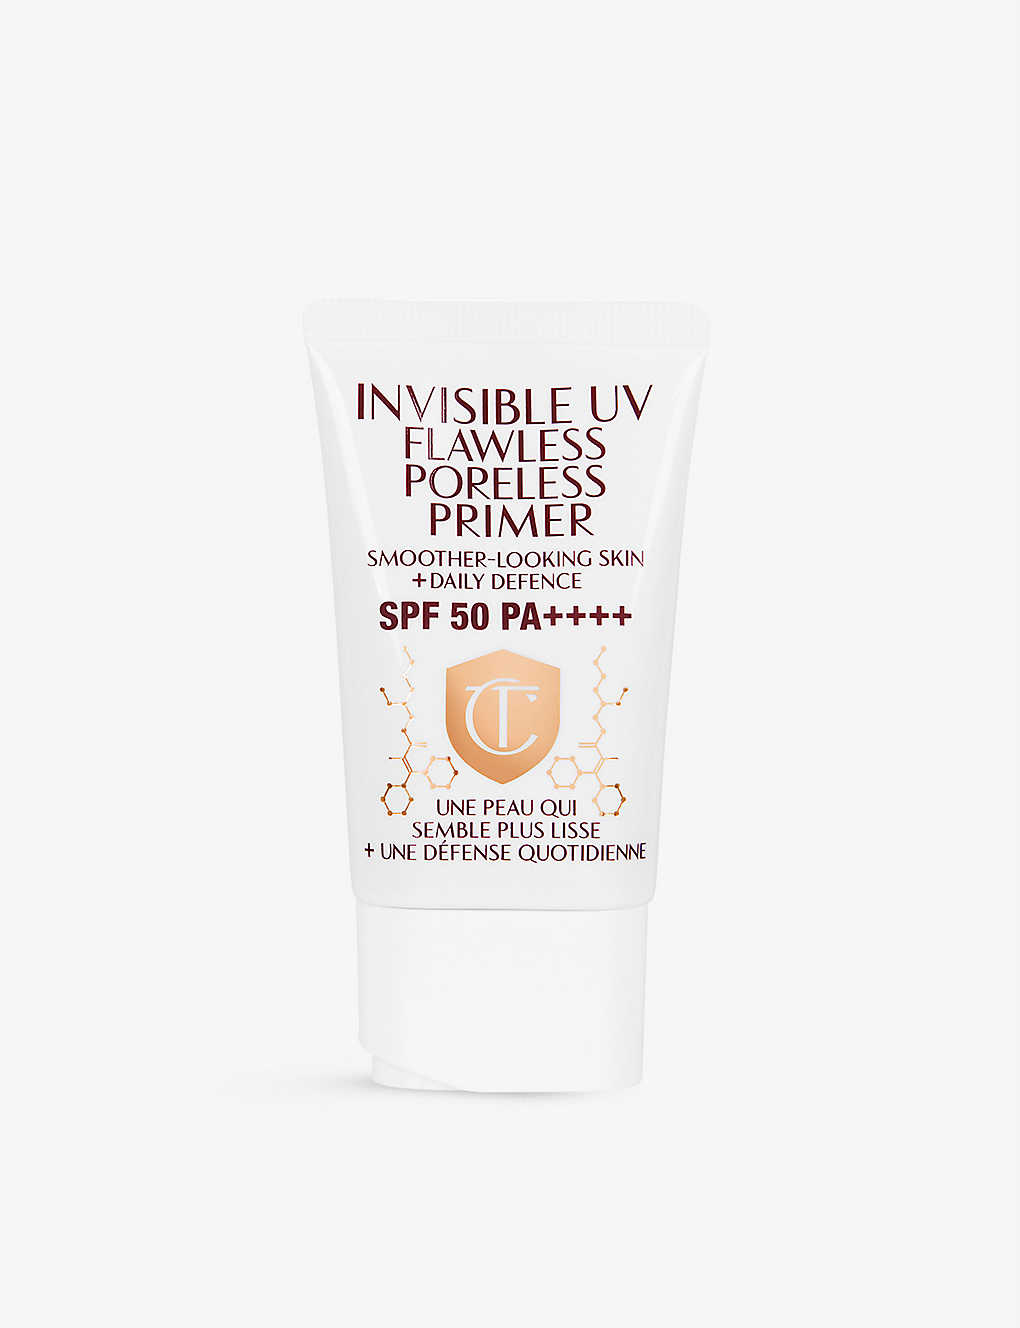 Charlotte Tilbury Invisible Uv Flawless Poreless Primer Spf50 30ml